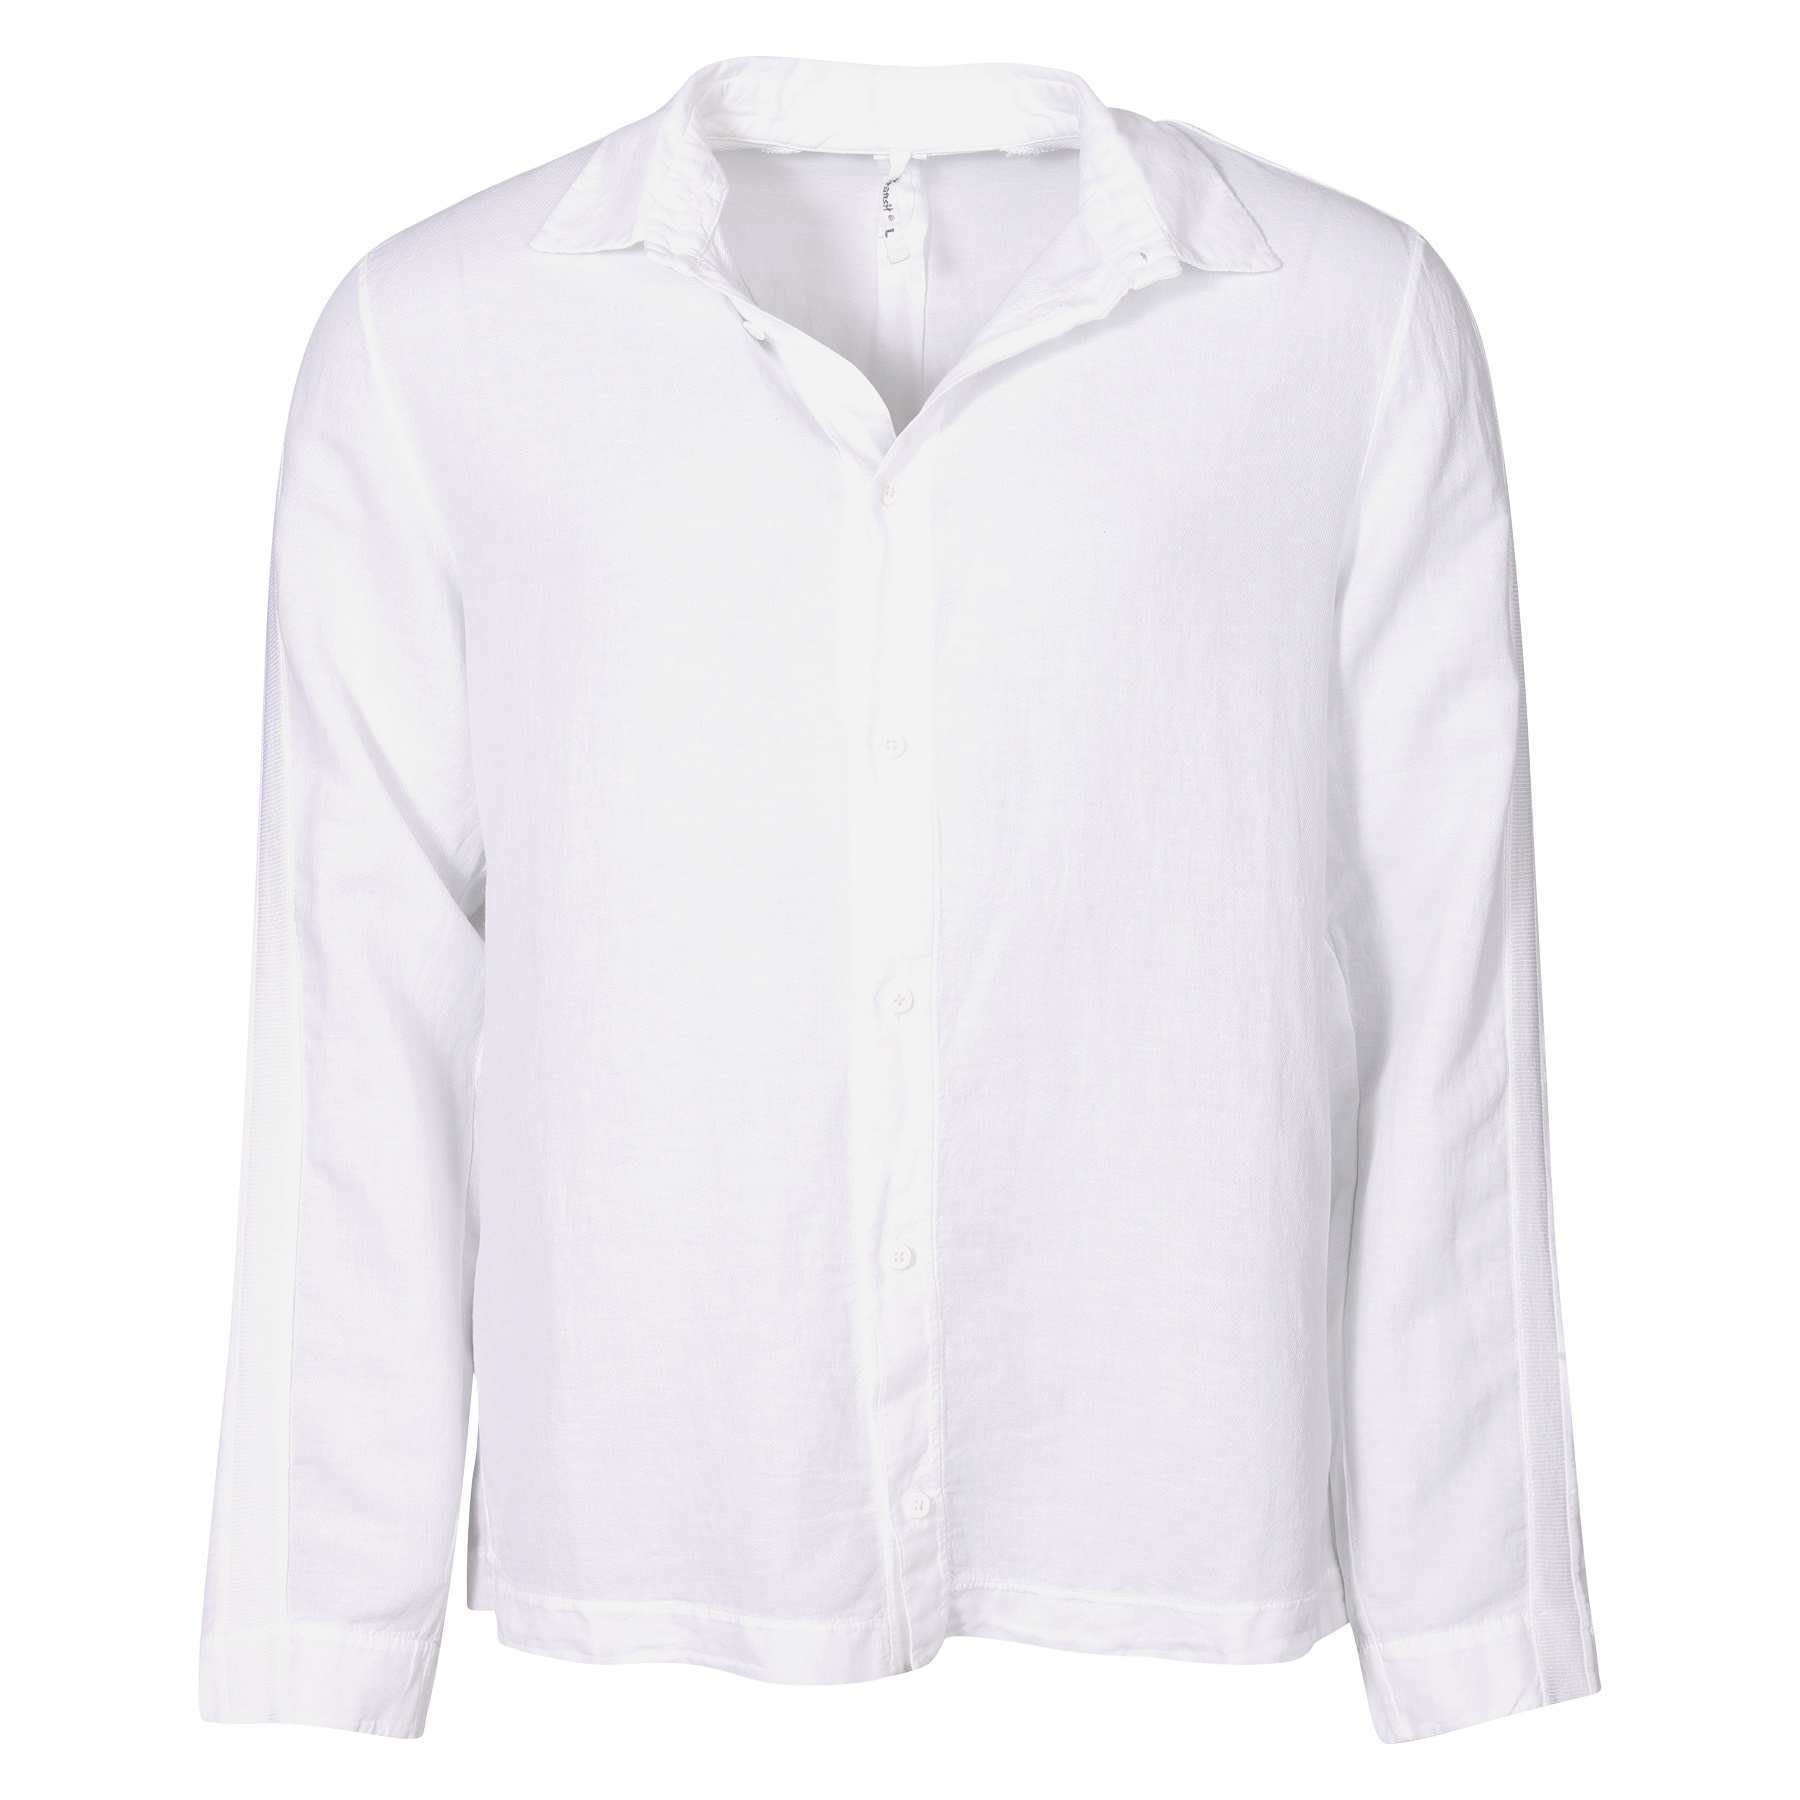 TRANSIT UOMO Cotton Linen Shirt in White 3XL